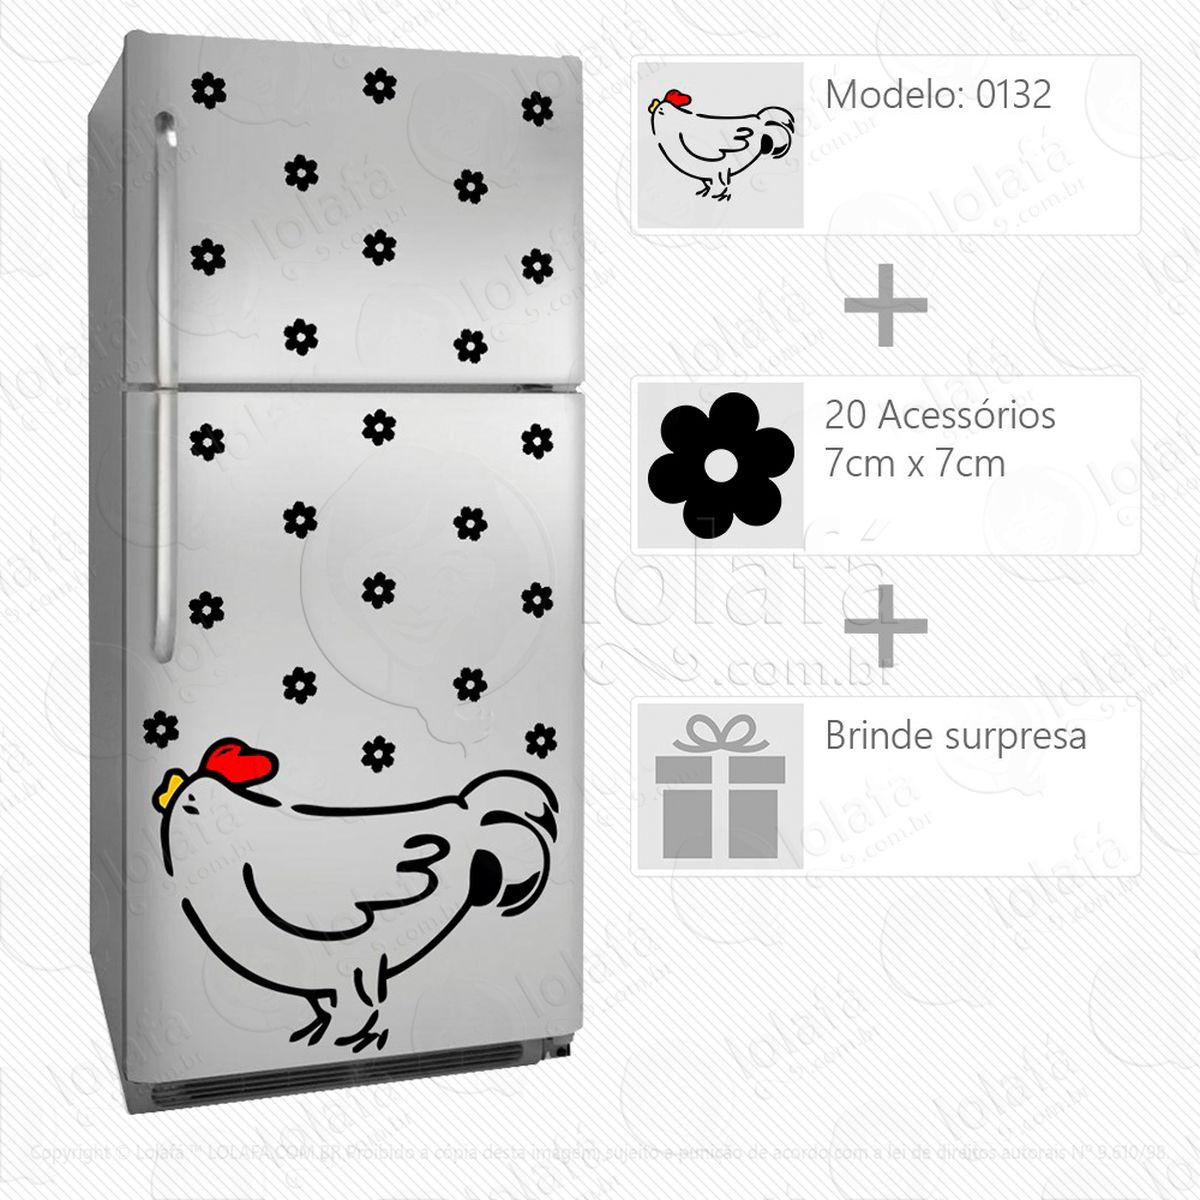 galo adesivo para geladeira e frigobar - mod:132